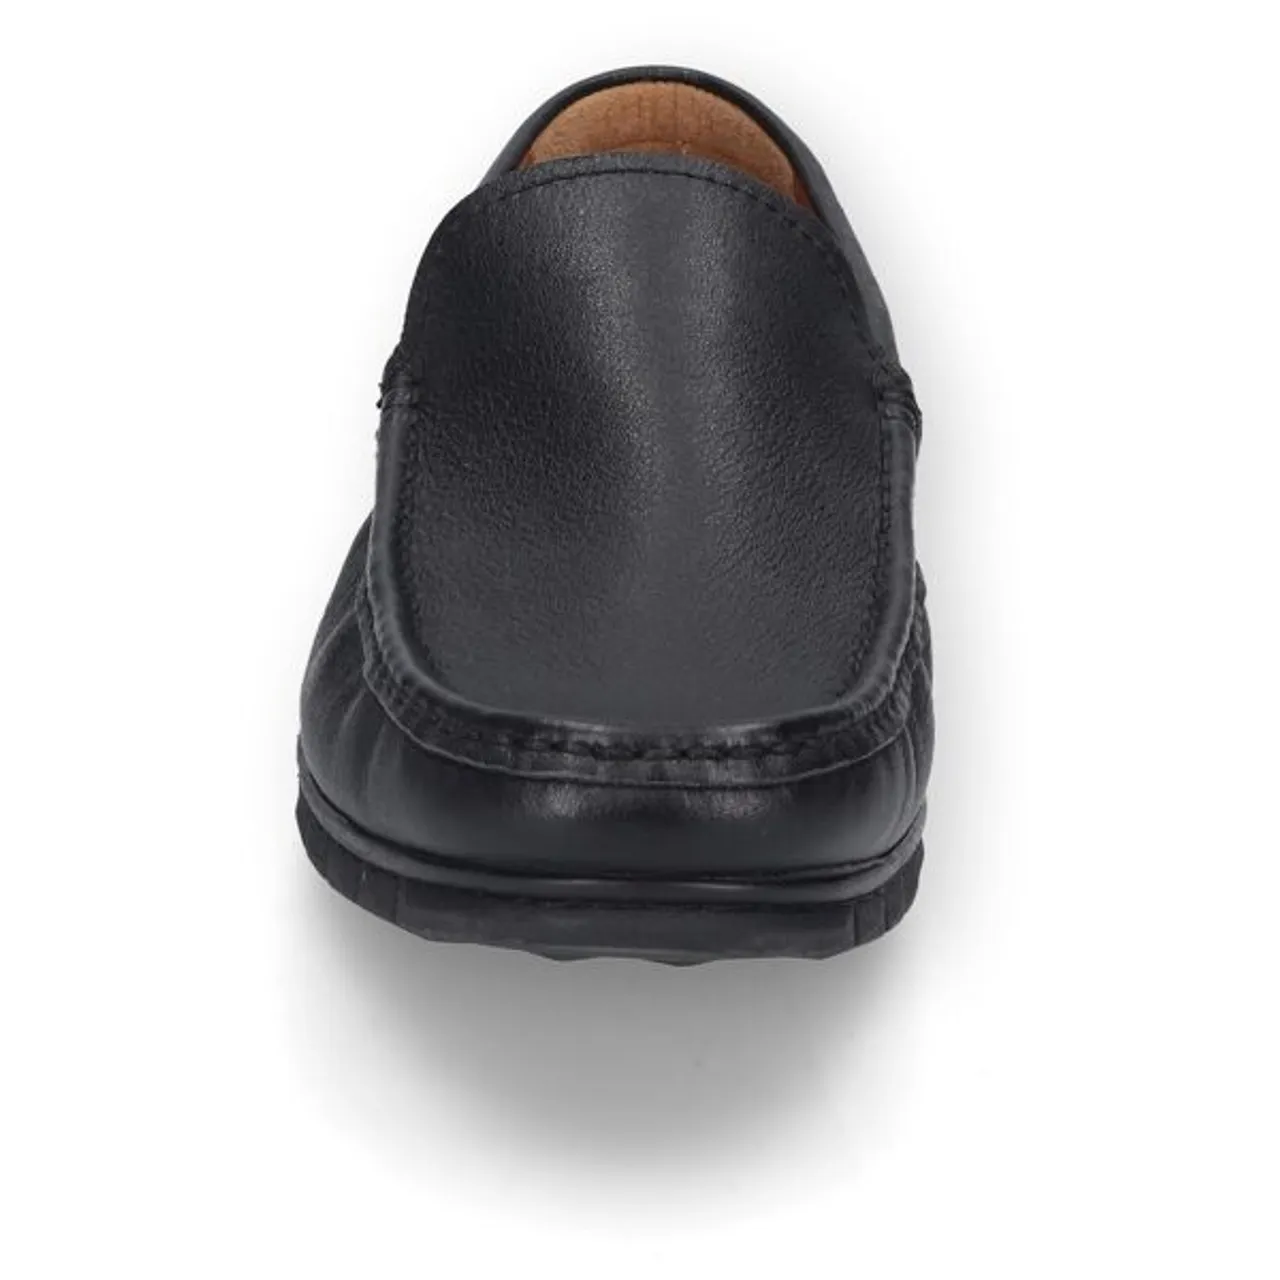 Mokassin CAMEL ACTIVE Gr. 44, schwarz Herren Schuhe Business-Schuhe Slipper, Business Schuh, Autofahrer Schuh zum Schlupfen